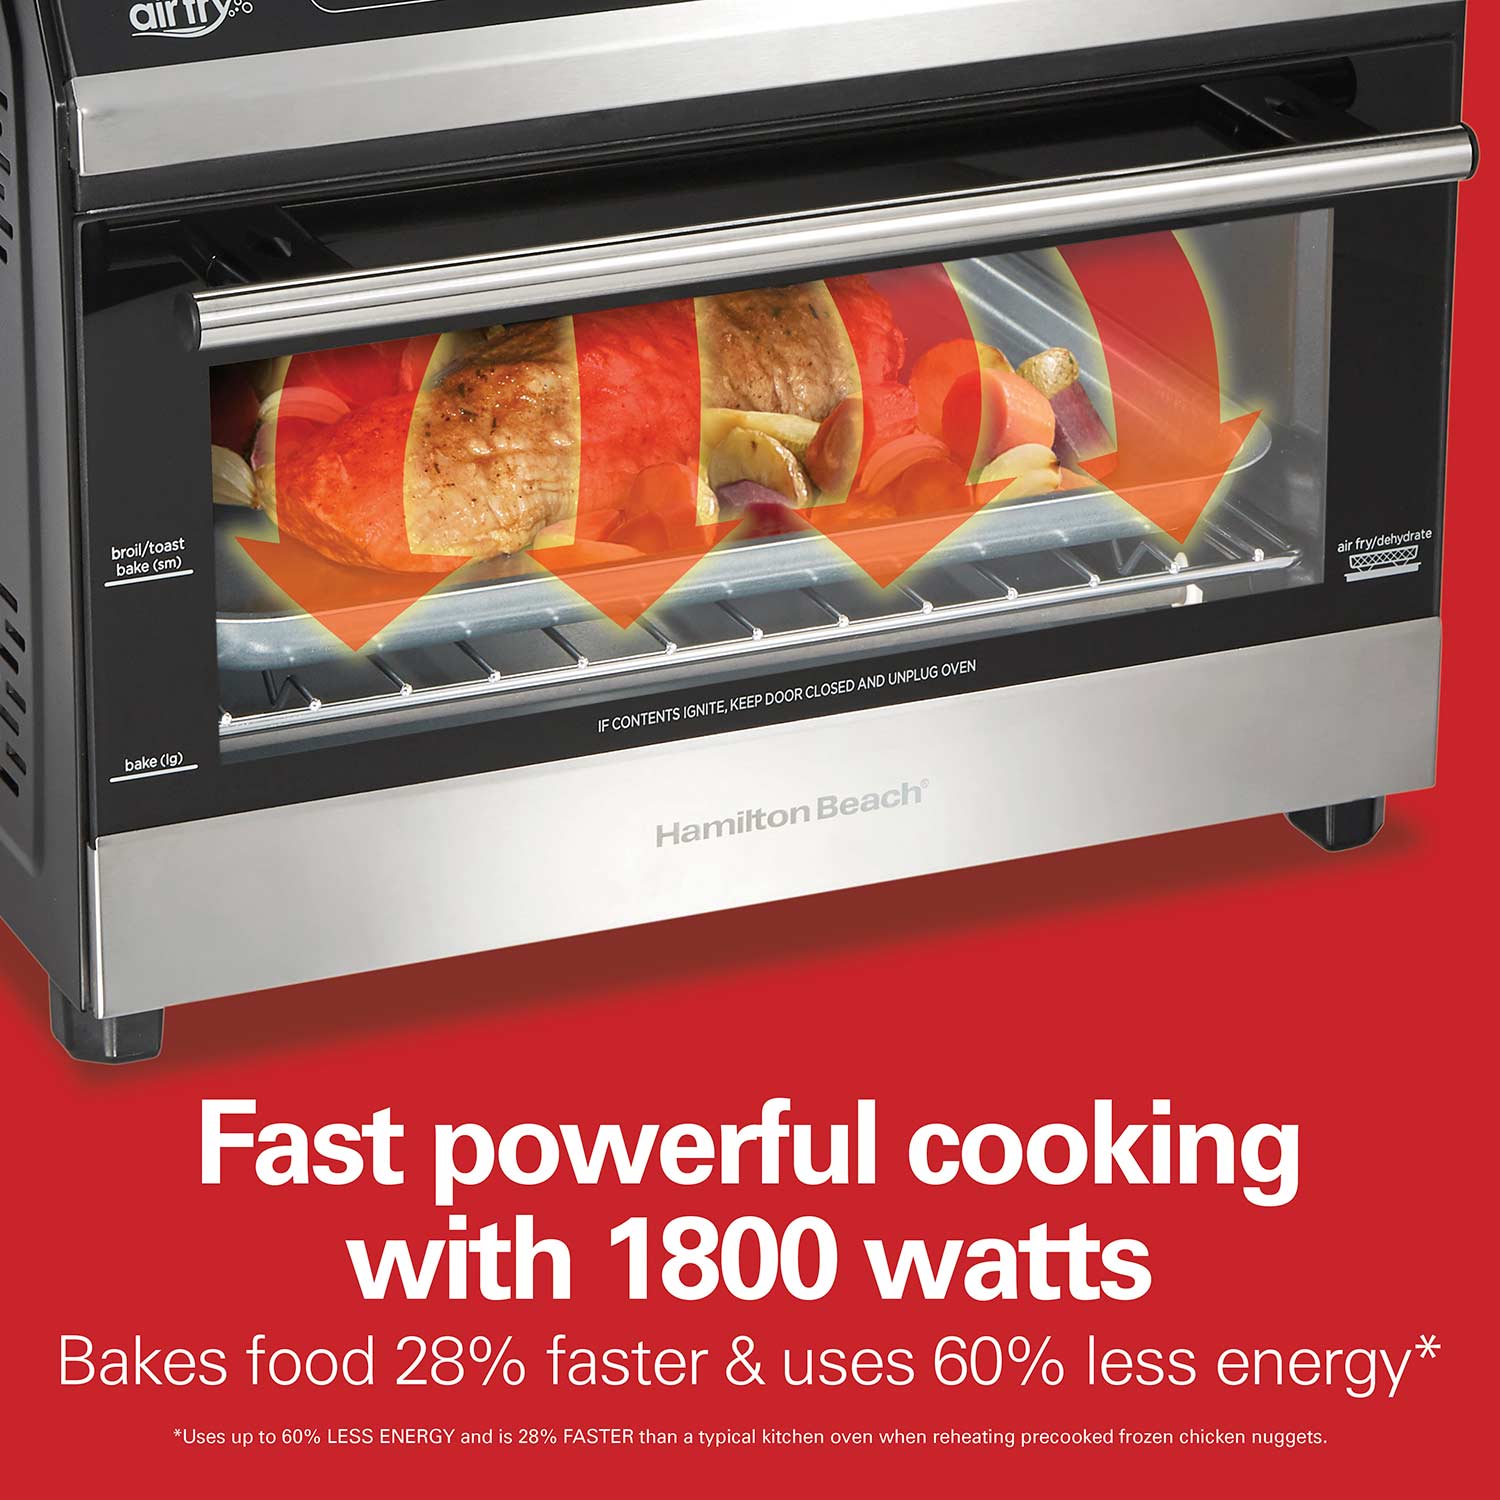 Hamilton Beach Digital Air Fryer Toaster Oven, 6 Slice Capacity